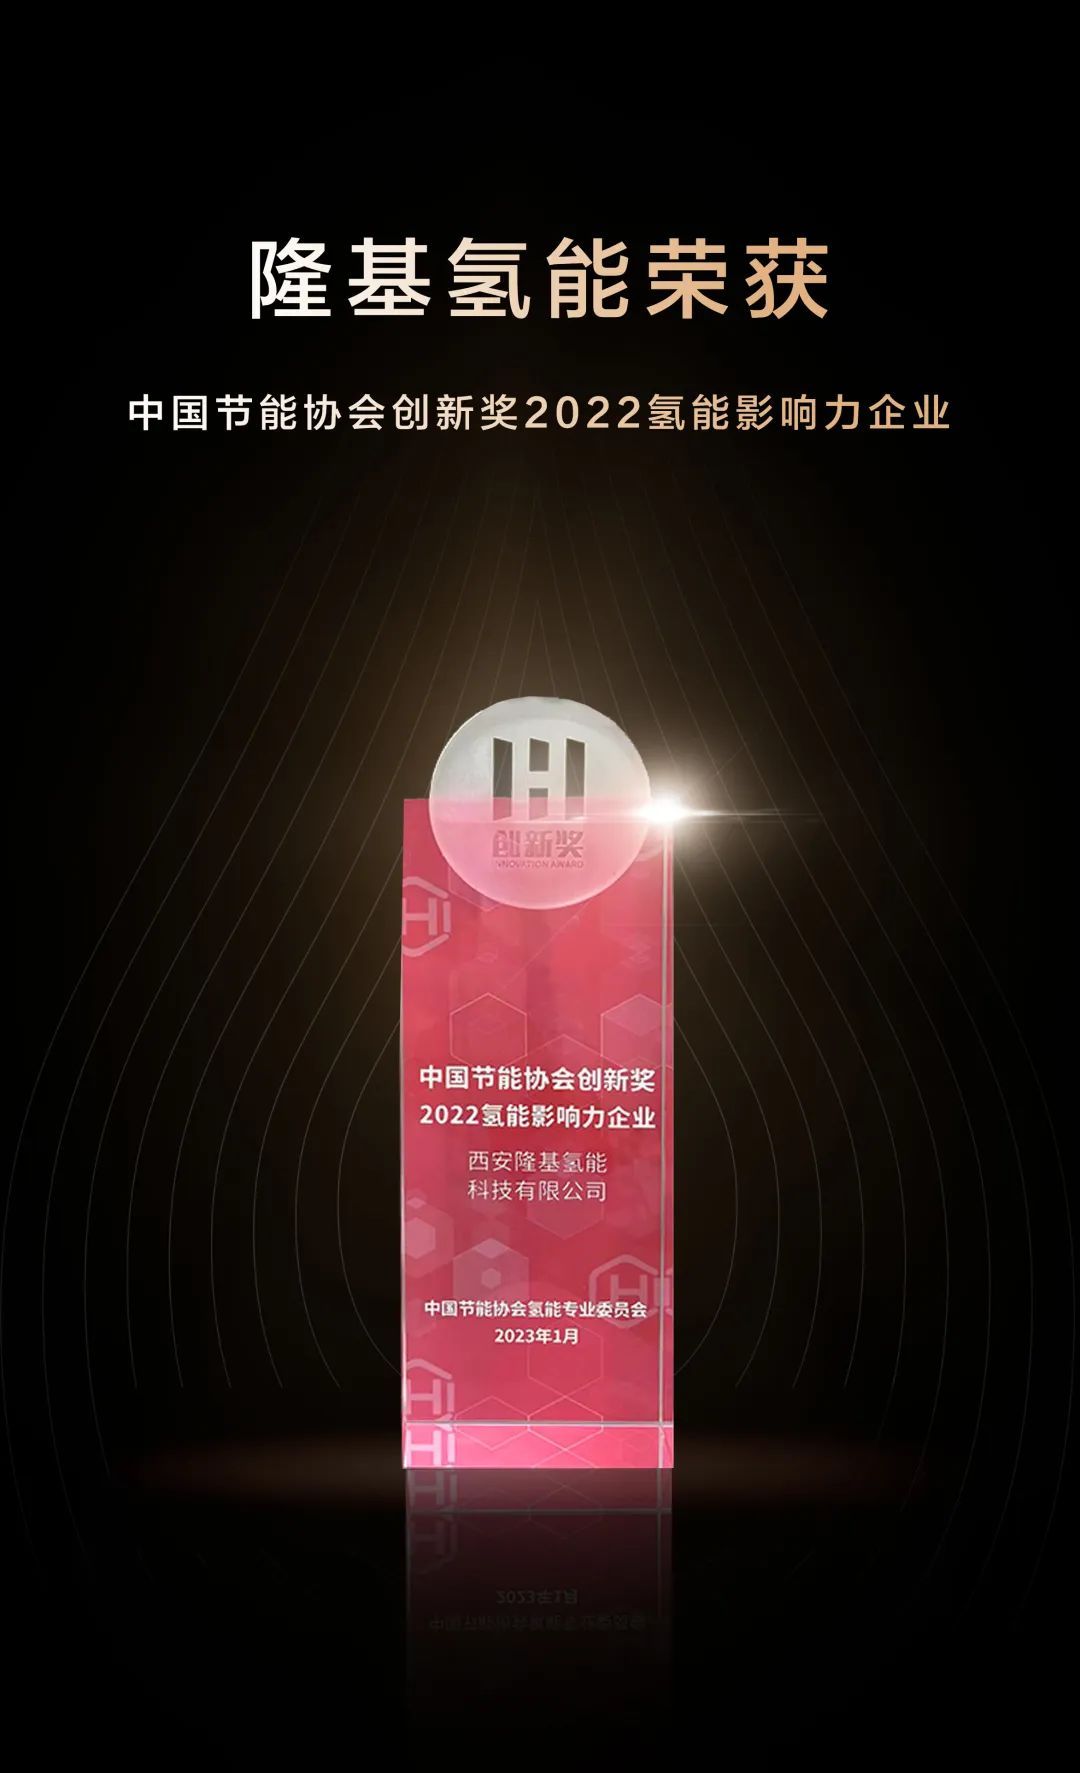 隆基氢能获中国节能协会创新奖2022氢能影响力企业奖